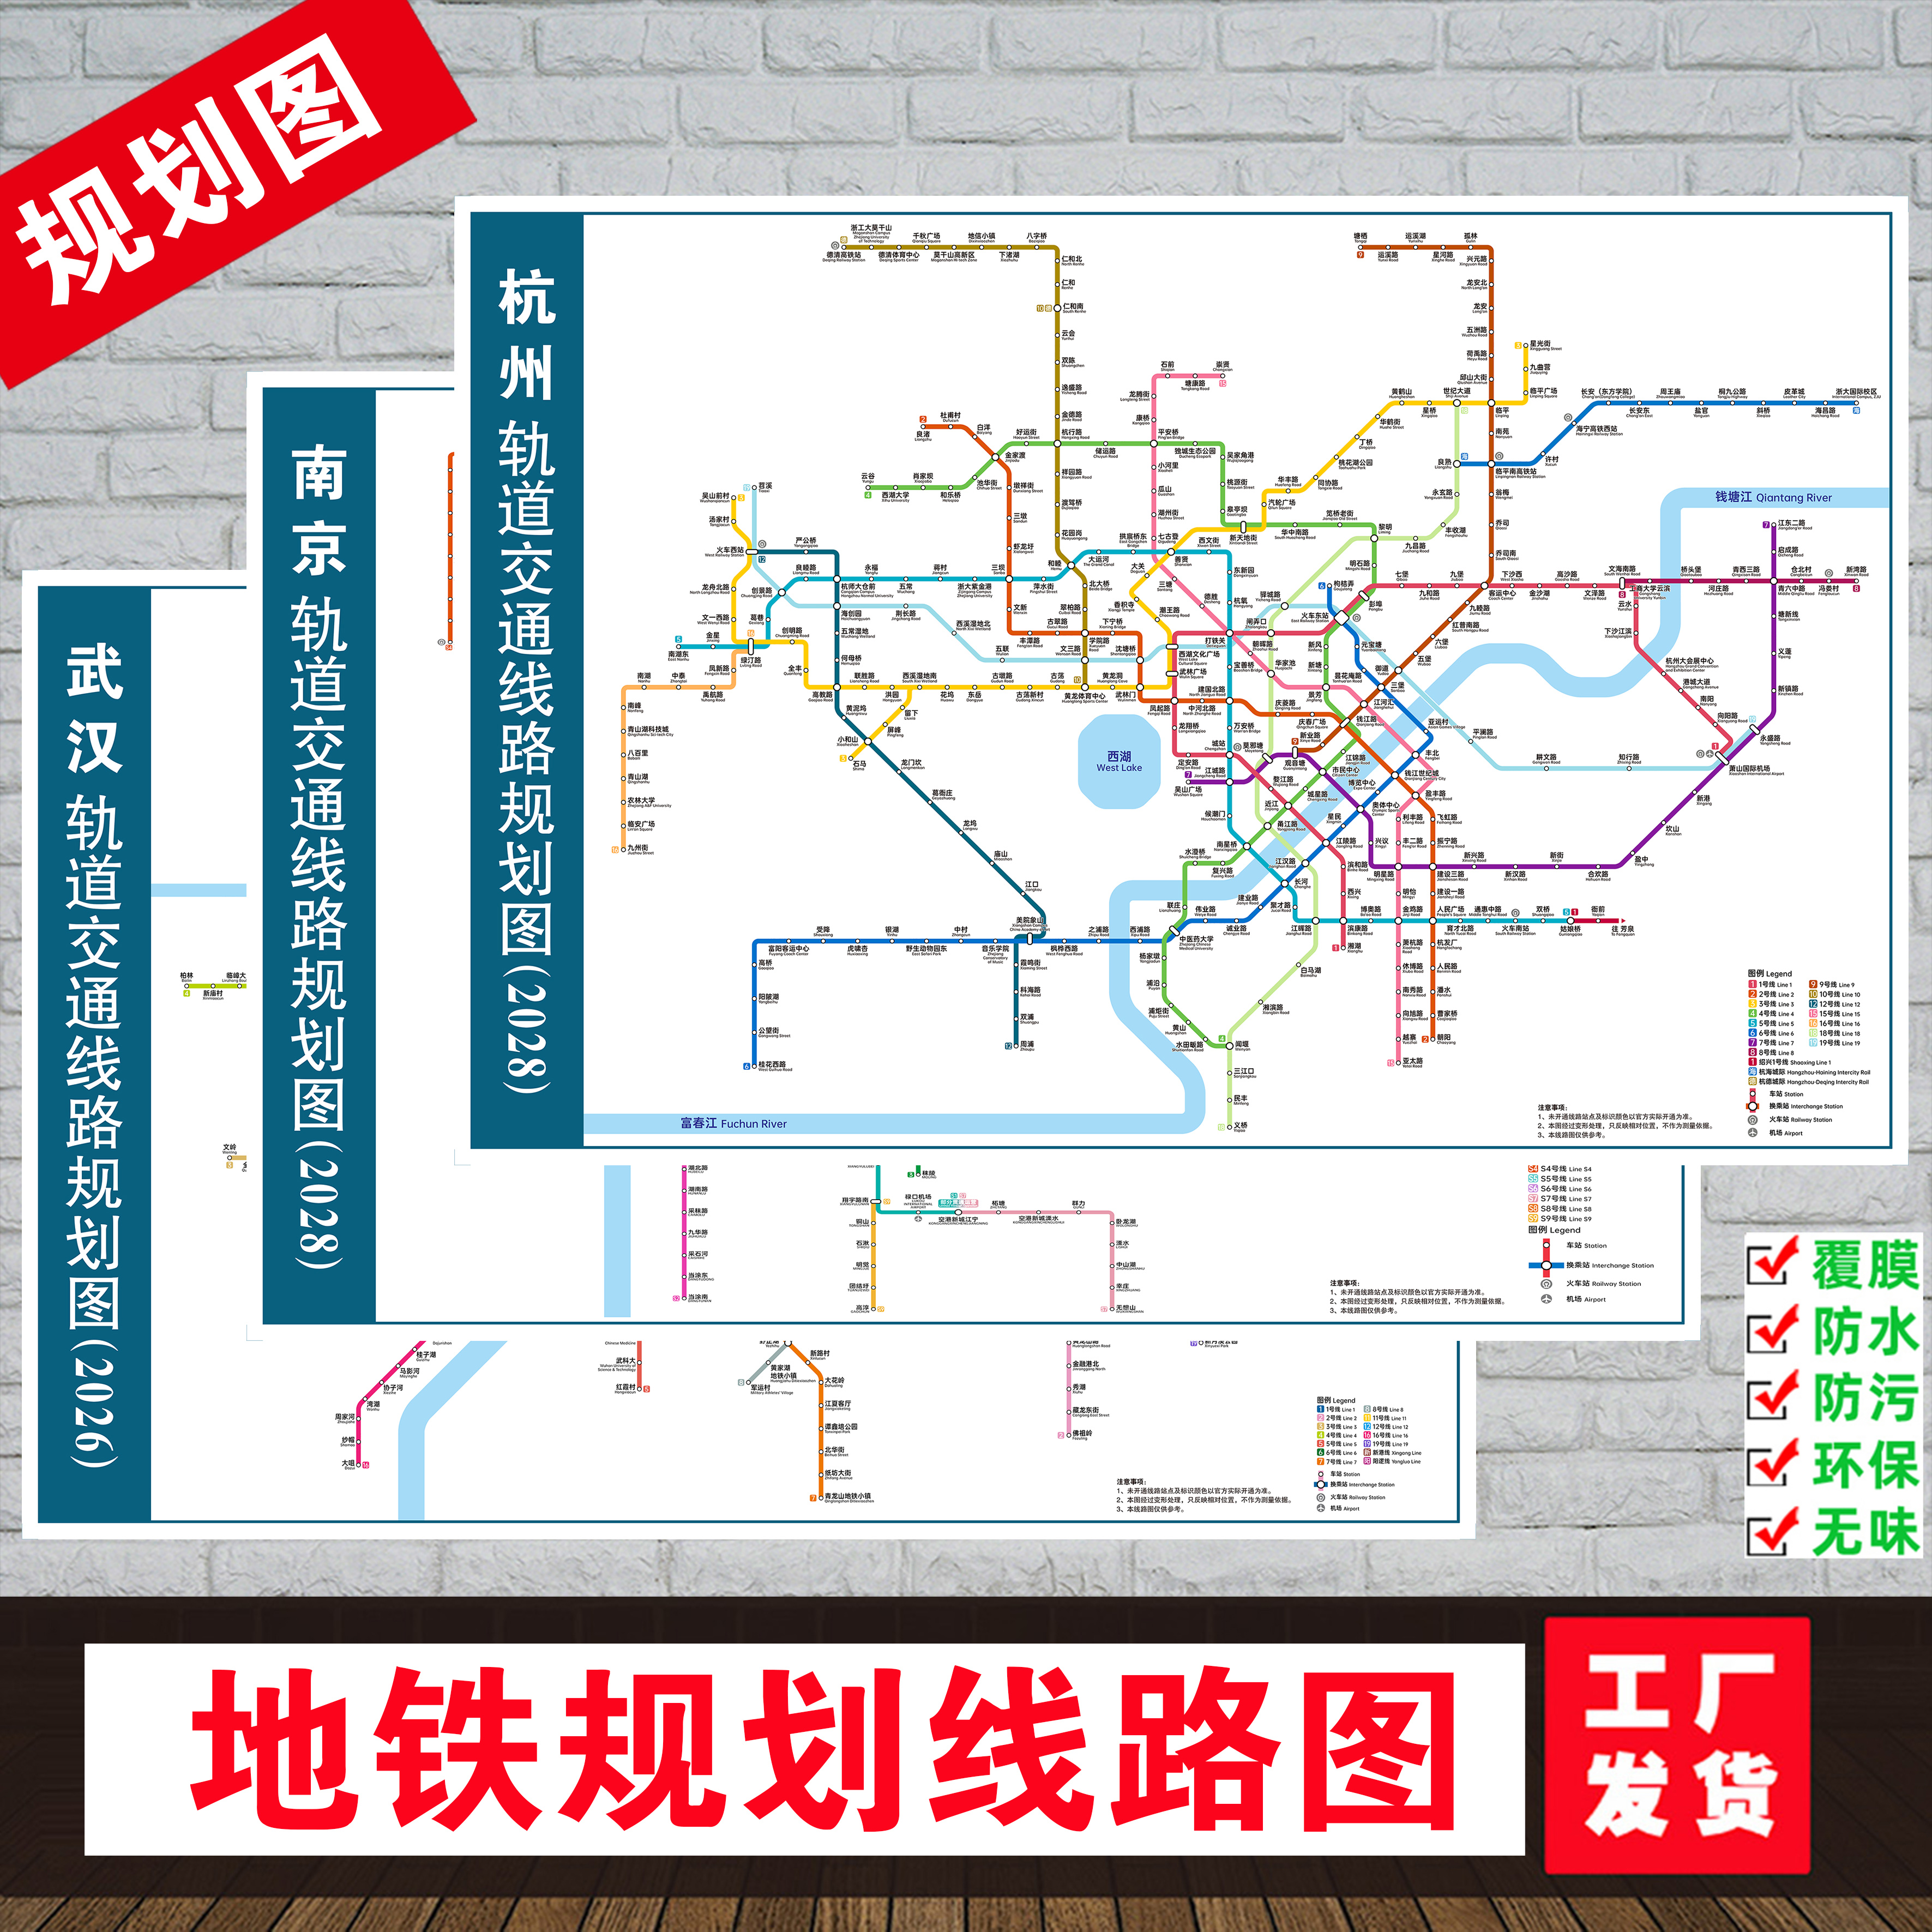 2026-2028地铁线路规划图杭州南京苏州武汉上海北京轨道交通挂图